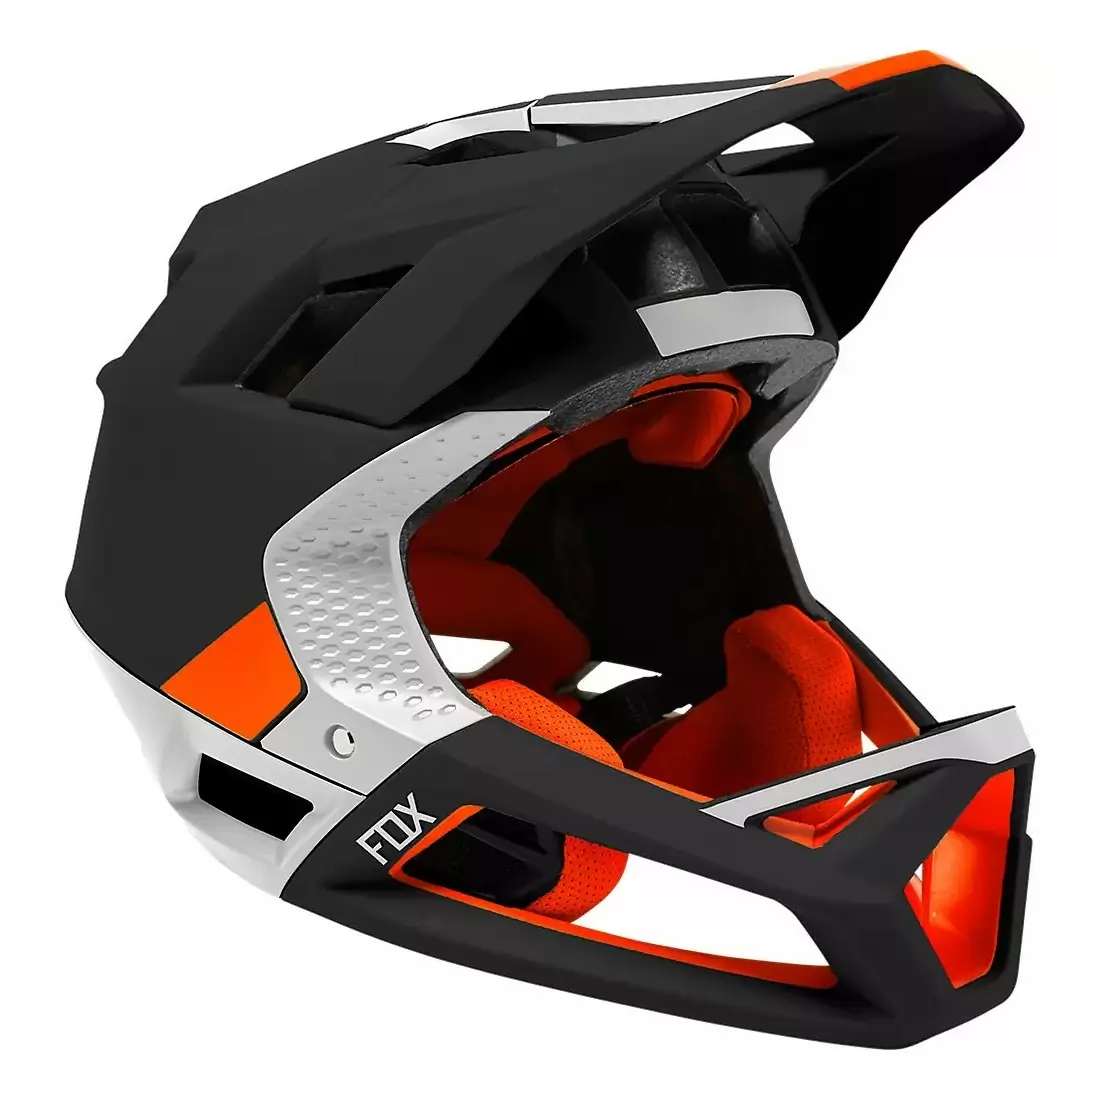 Proframe MTB Fullface Helmet Blocked Black/White Size S (52-56cm) #1